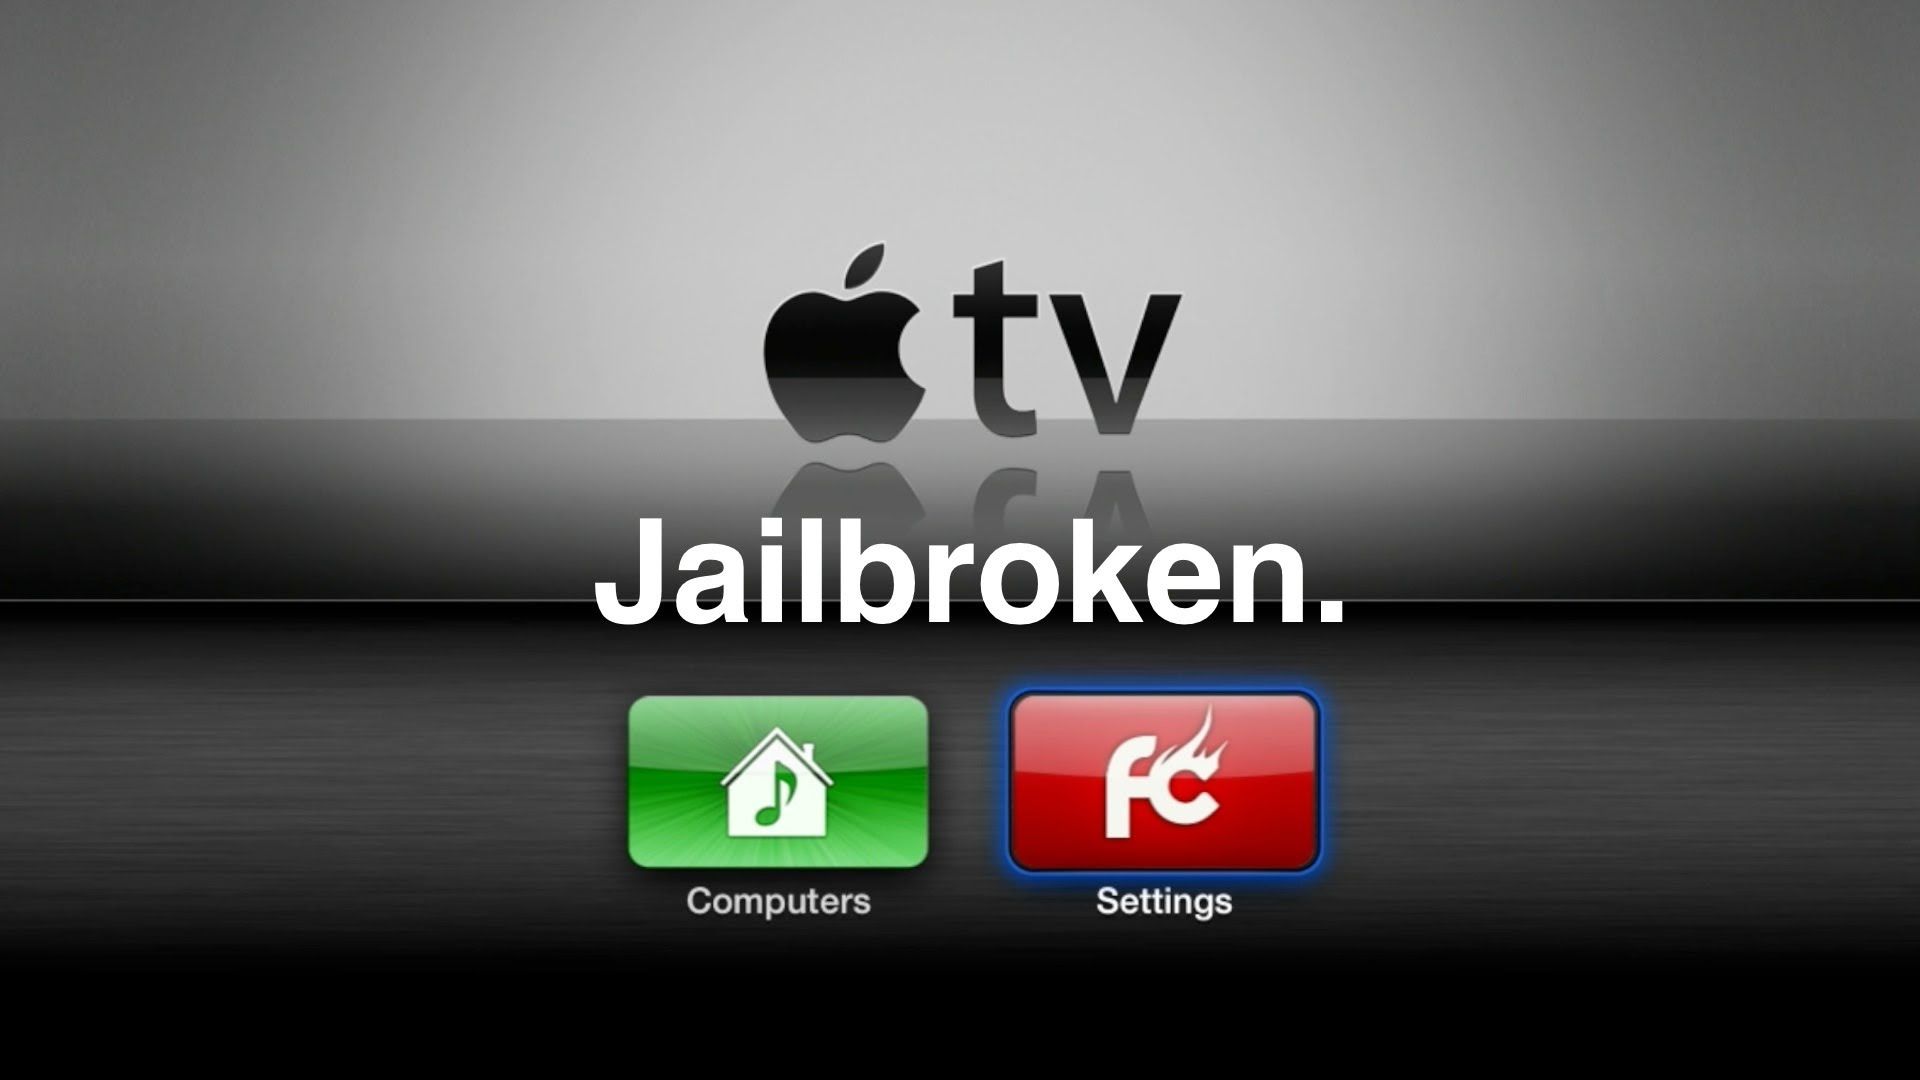 How to jailbreak Apple TV 2 on iOS 6.1 (iOS 5.2) - YouTube